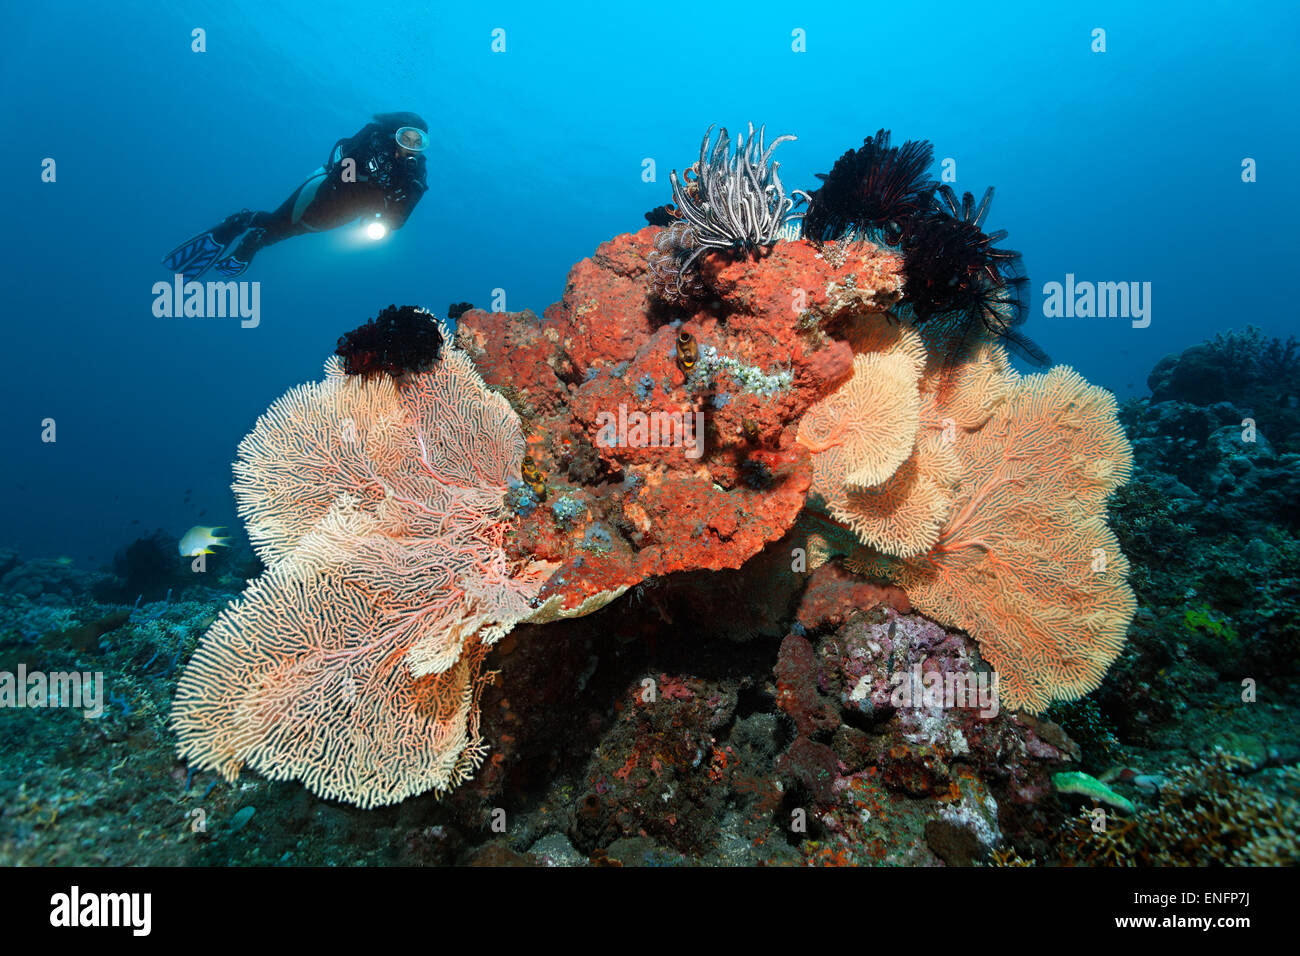 Taucher am Korallenriff mit verschiedenen Korallen, Schwämmen und Seelilien, Bali Stockfoto